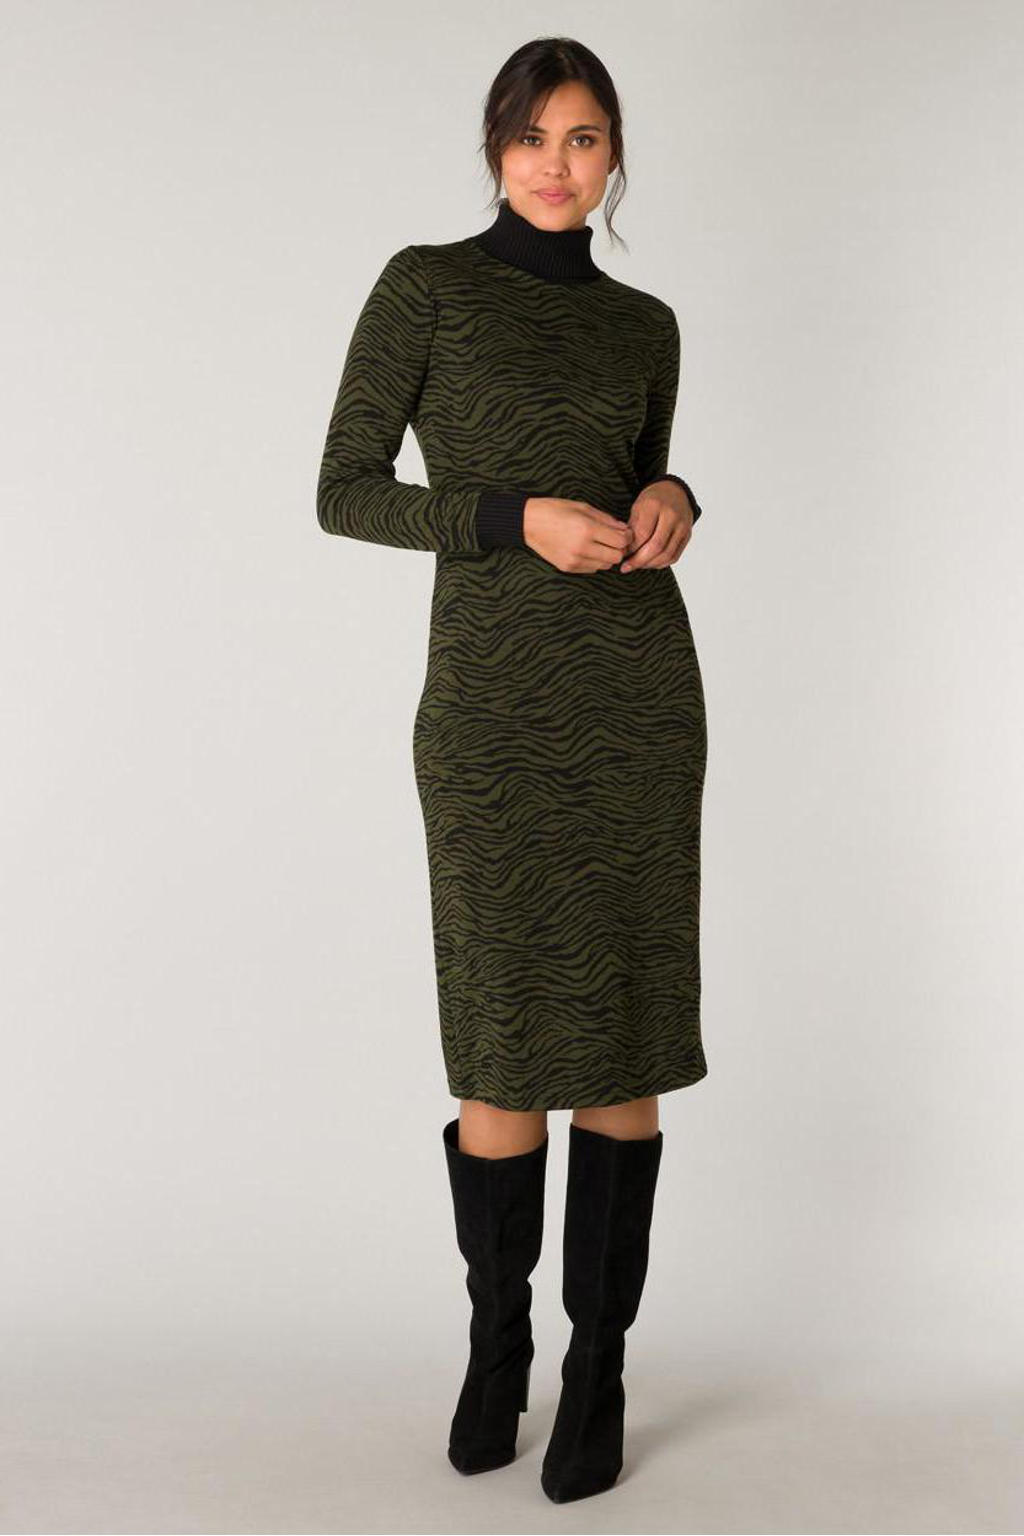 Yest gebreide jurk met dierenprint army green/black